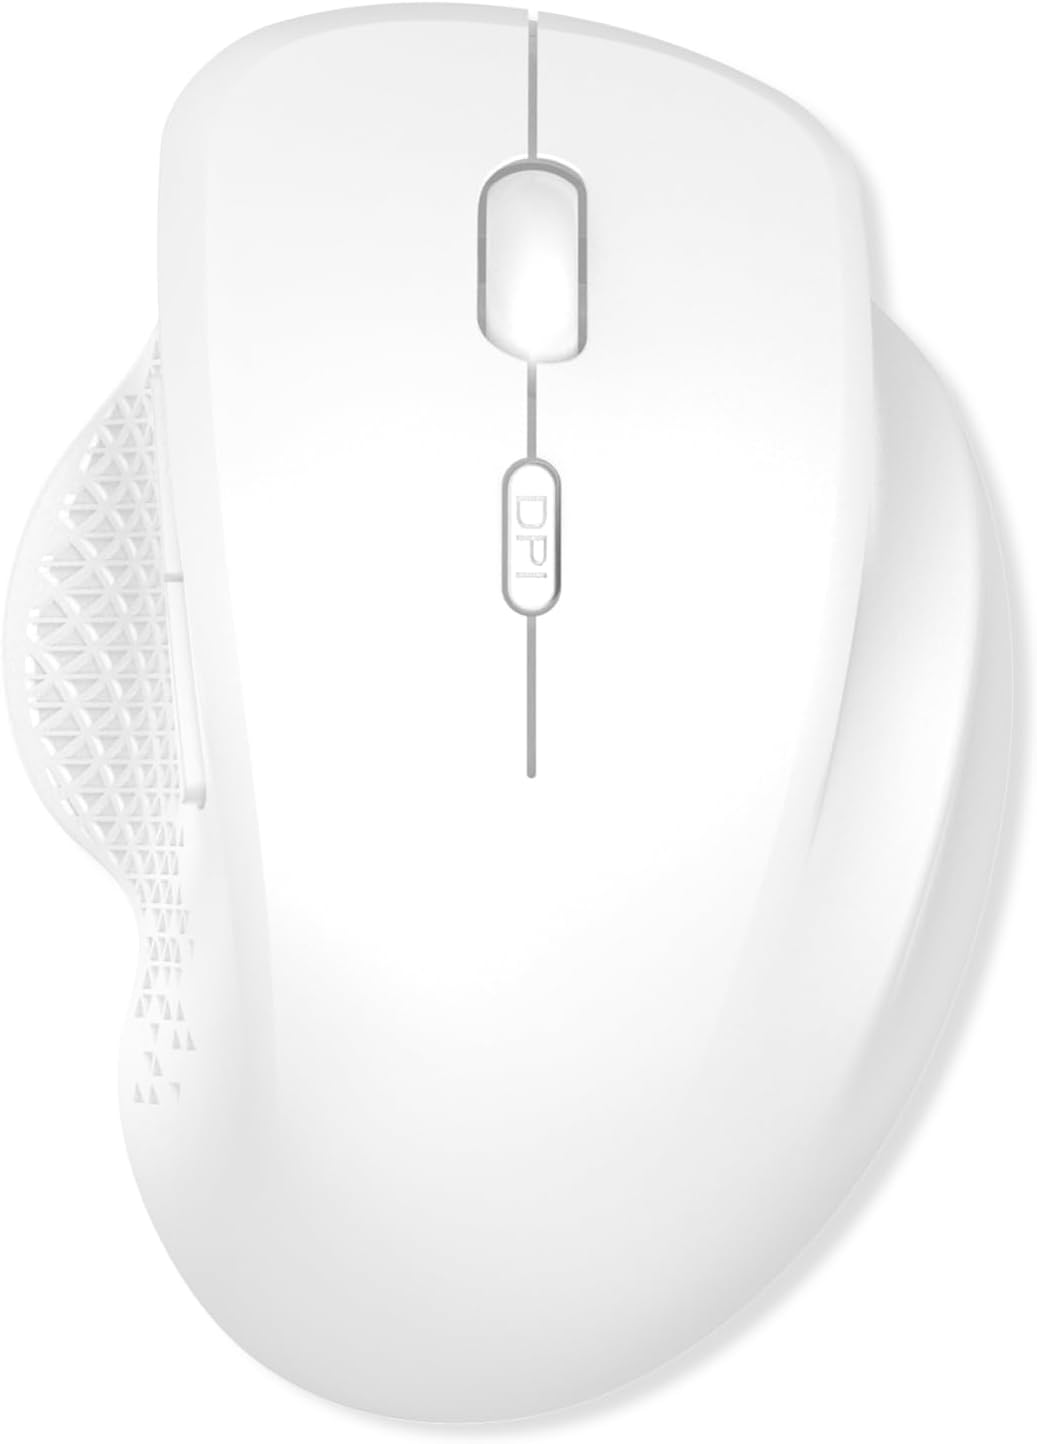 ワイヤレスマウス Bluetoothマウス ワイヤレス マウス 2.4GHz 5ボタン